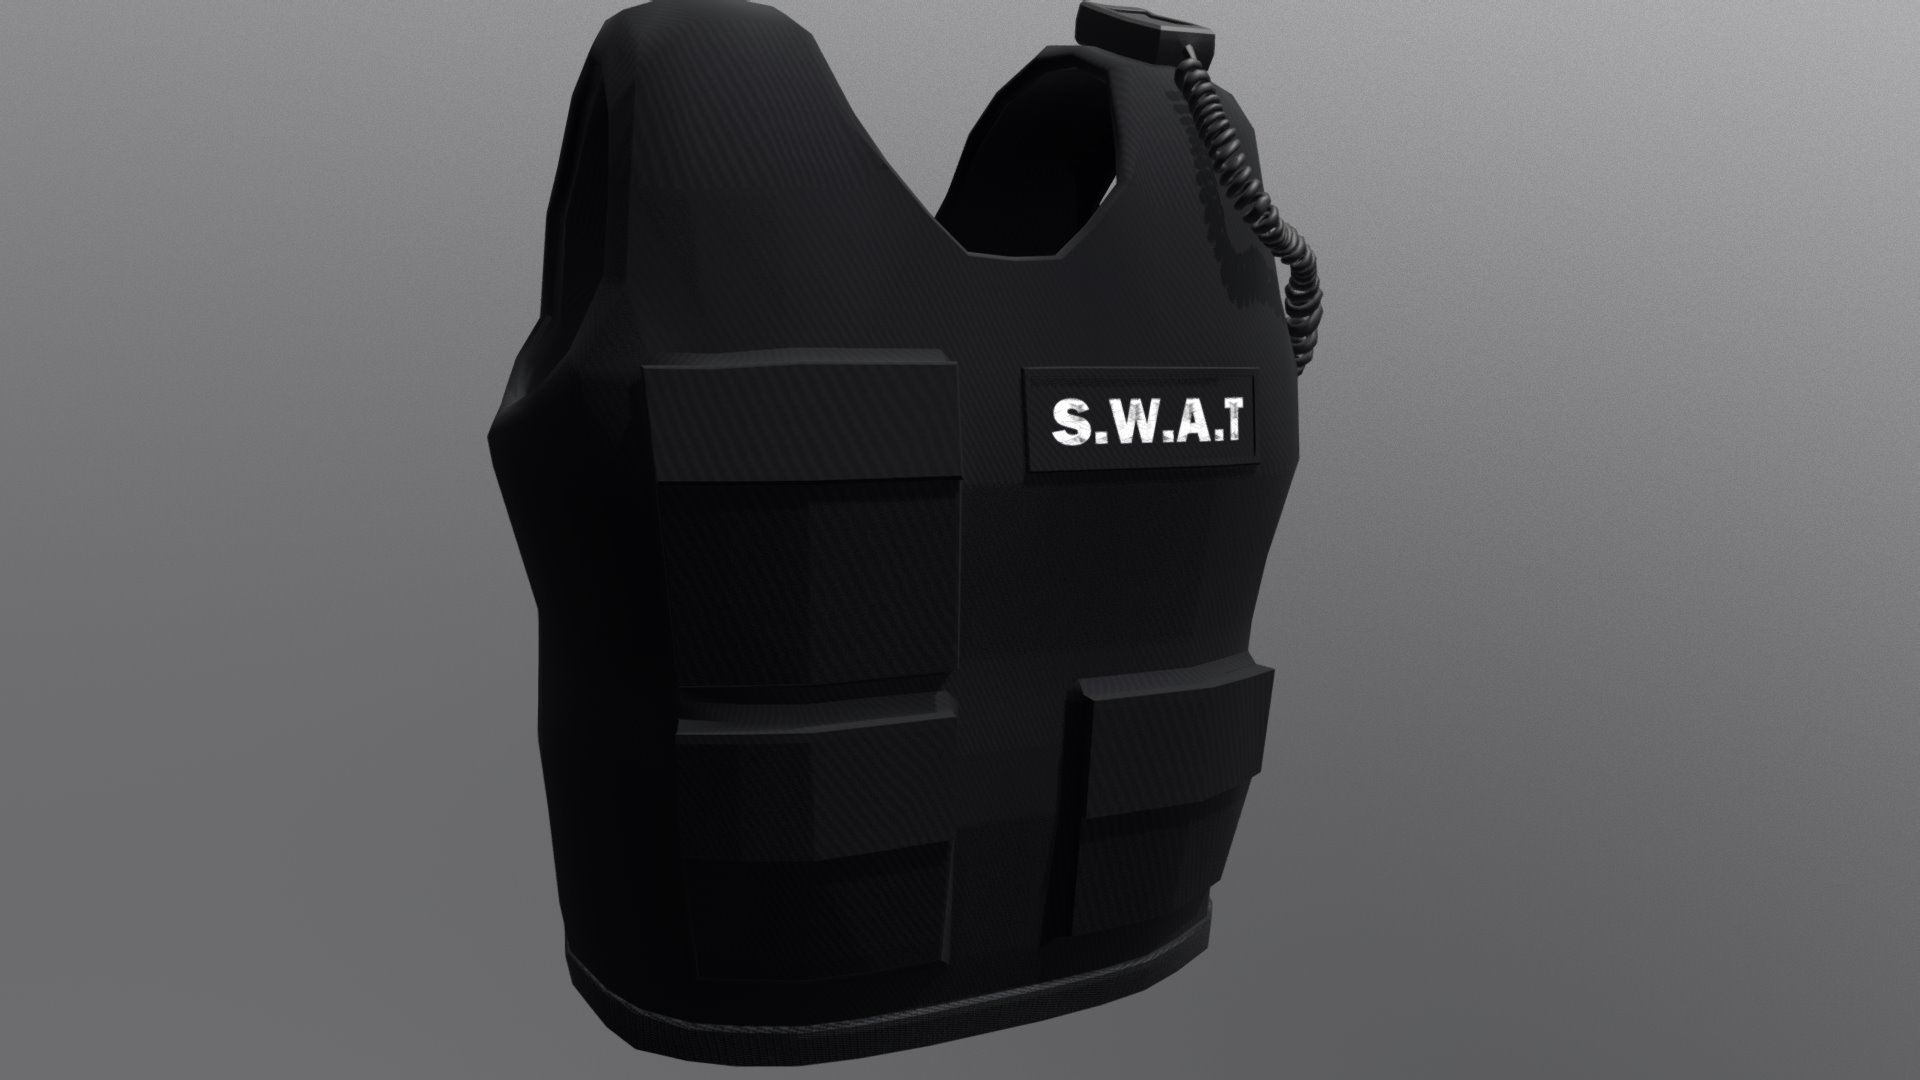 SWAT VEST - 3D model by zogorman 3d model